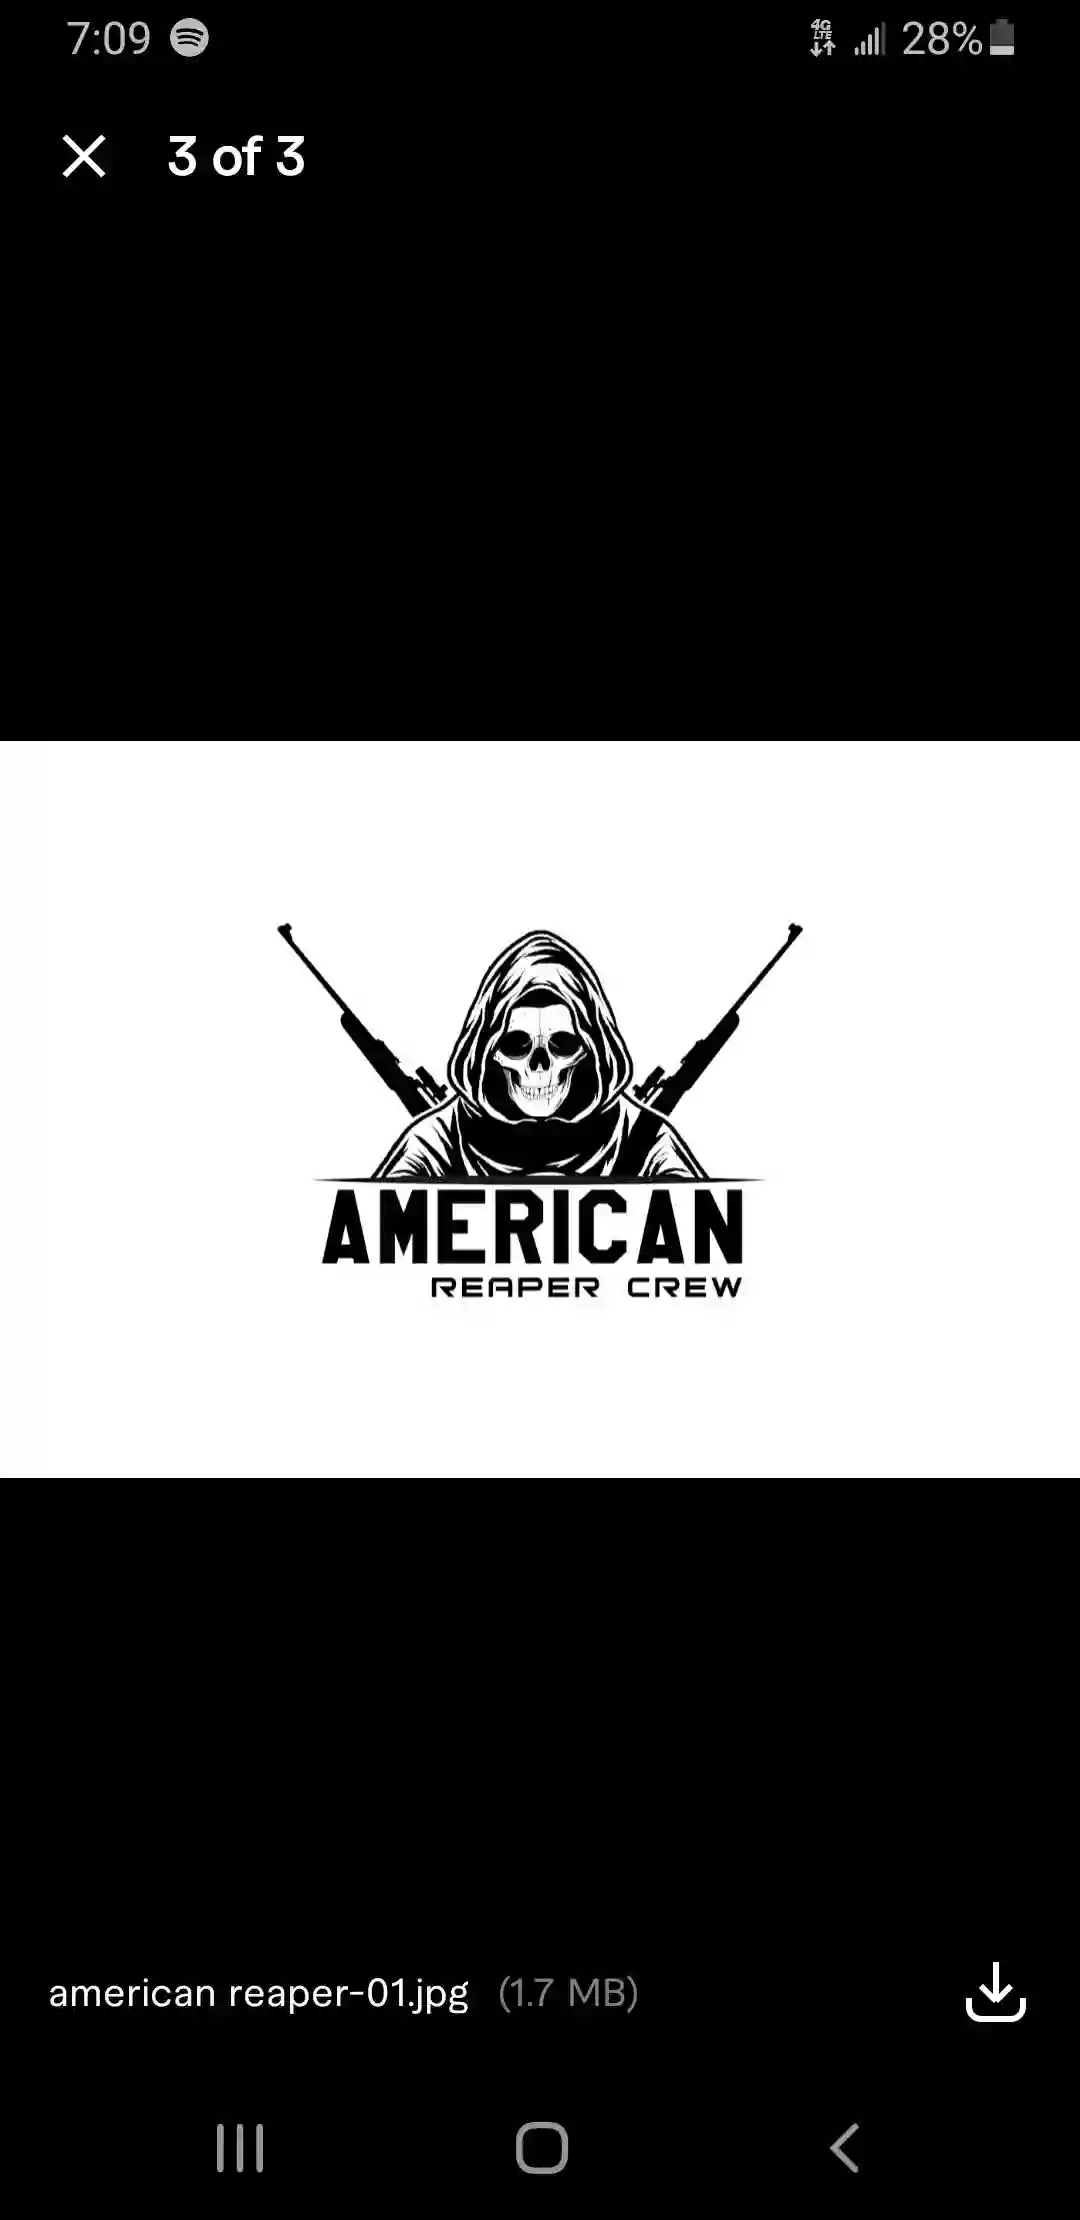 American Reaper Crew